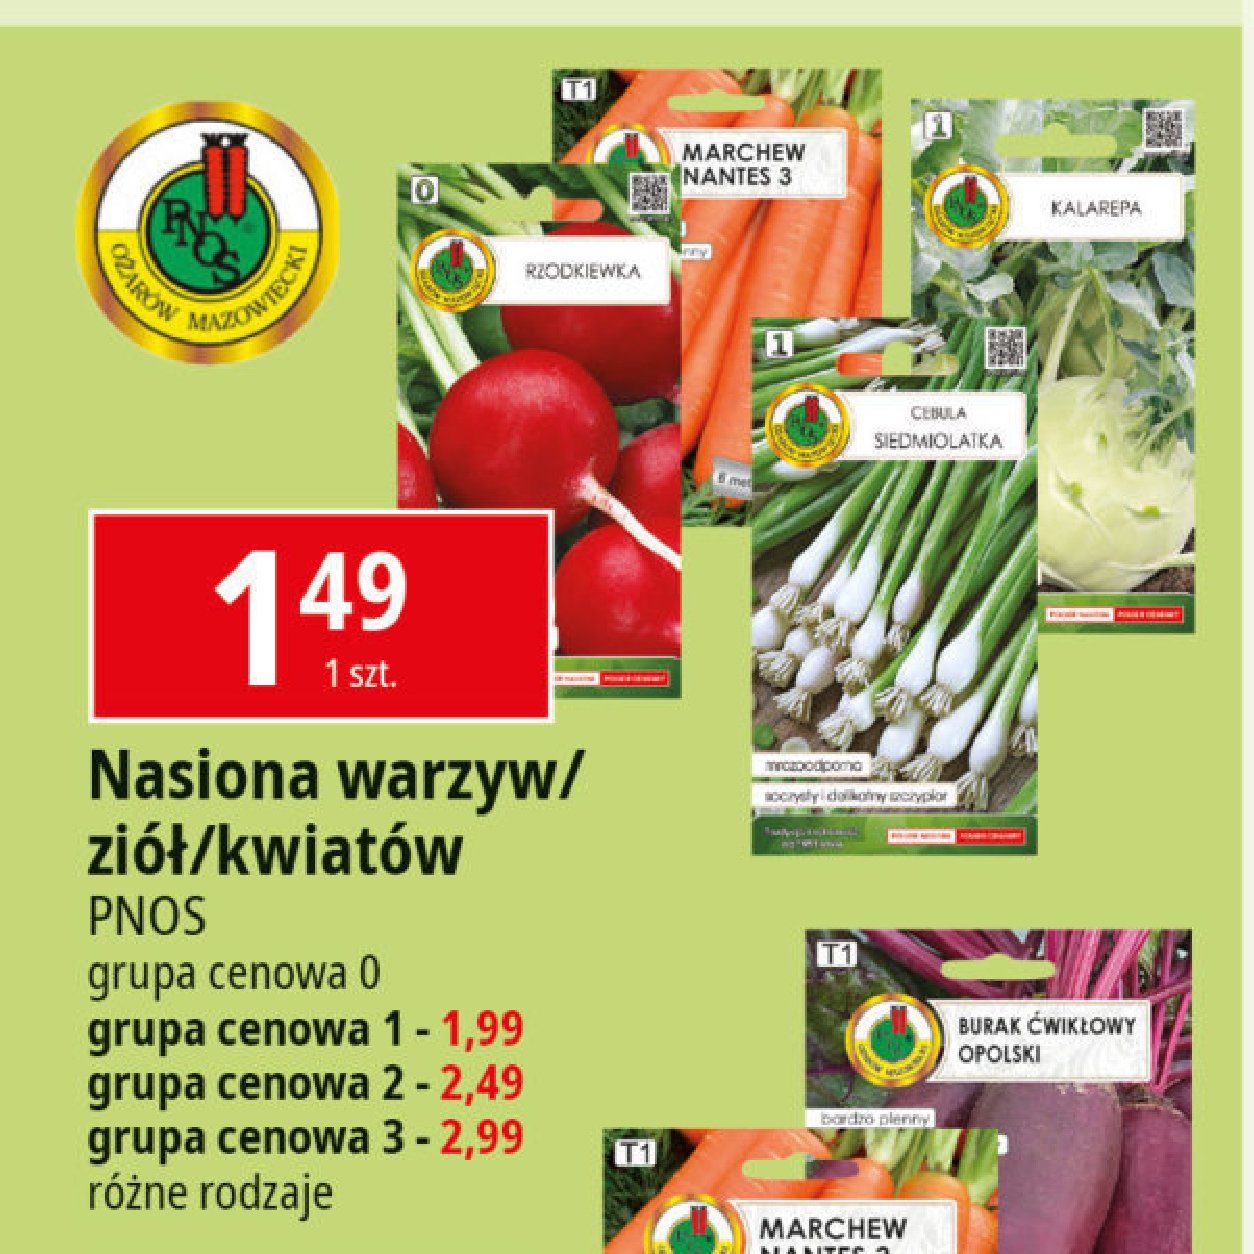 Nasiona warzyw gr. 1 Pnos promocja